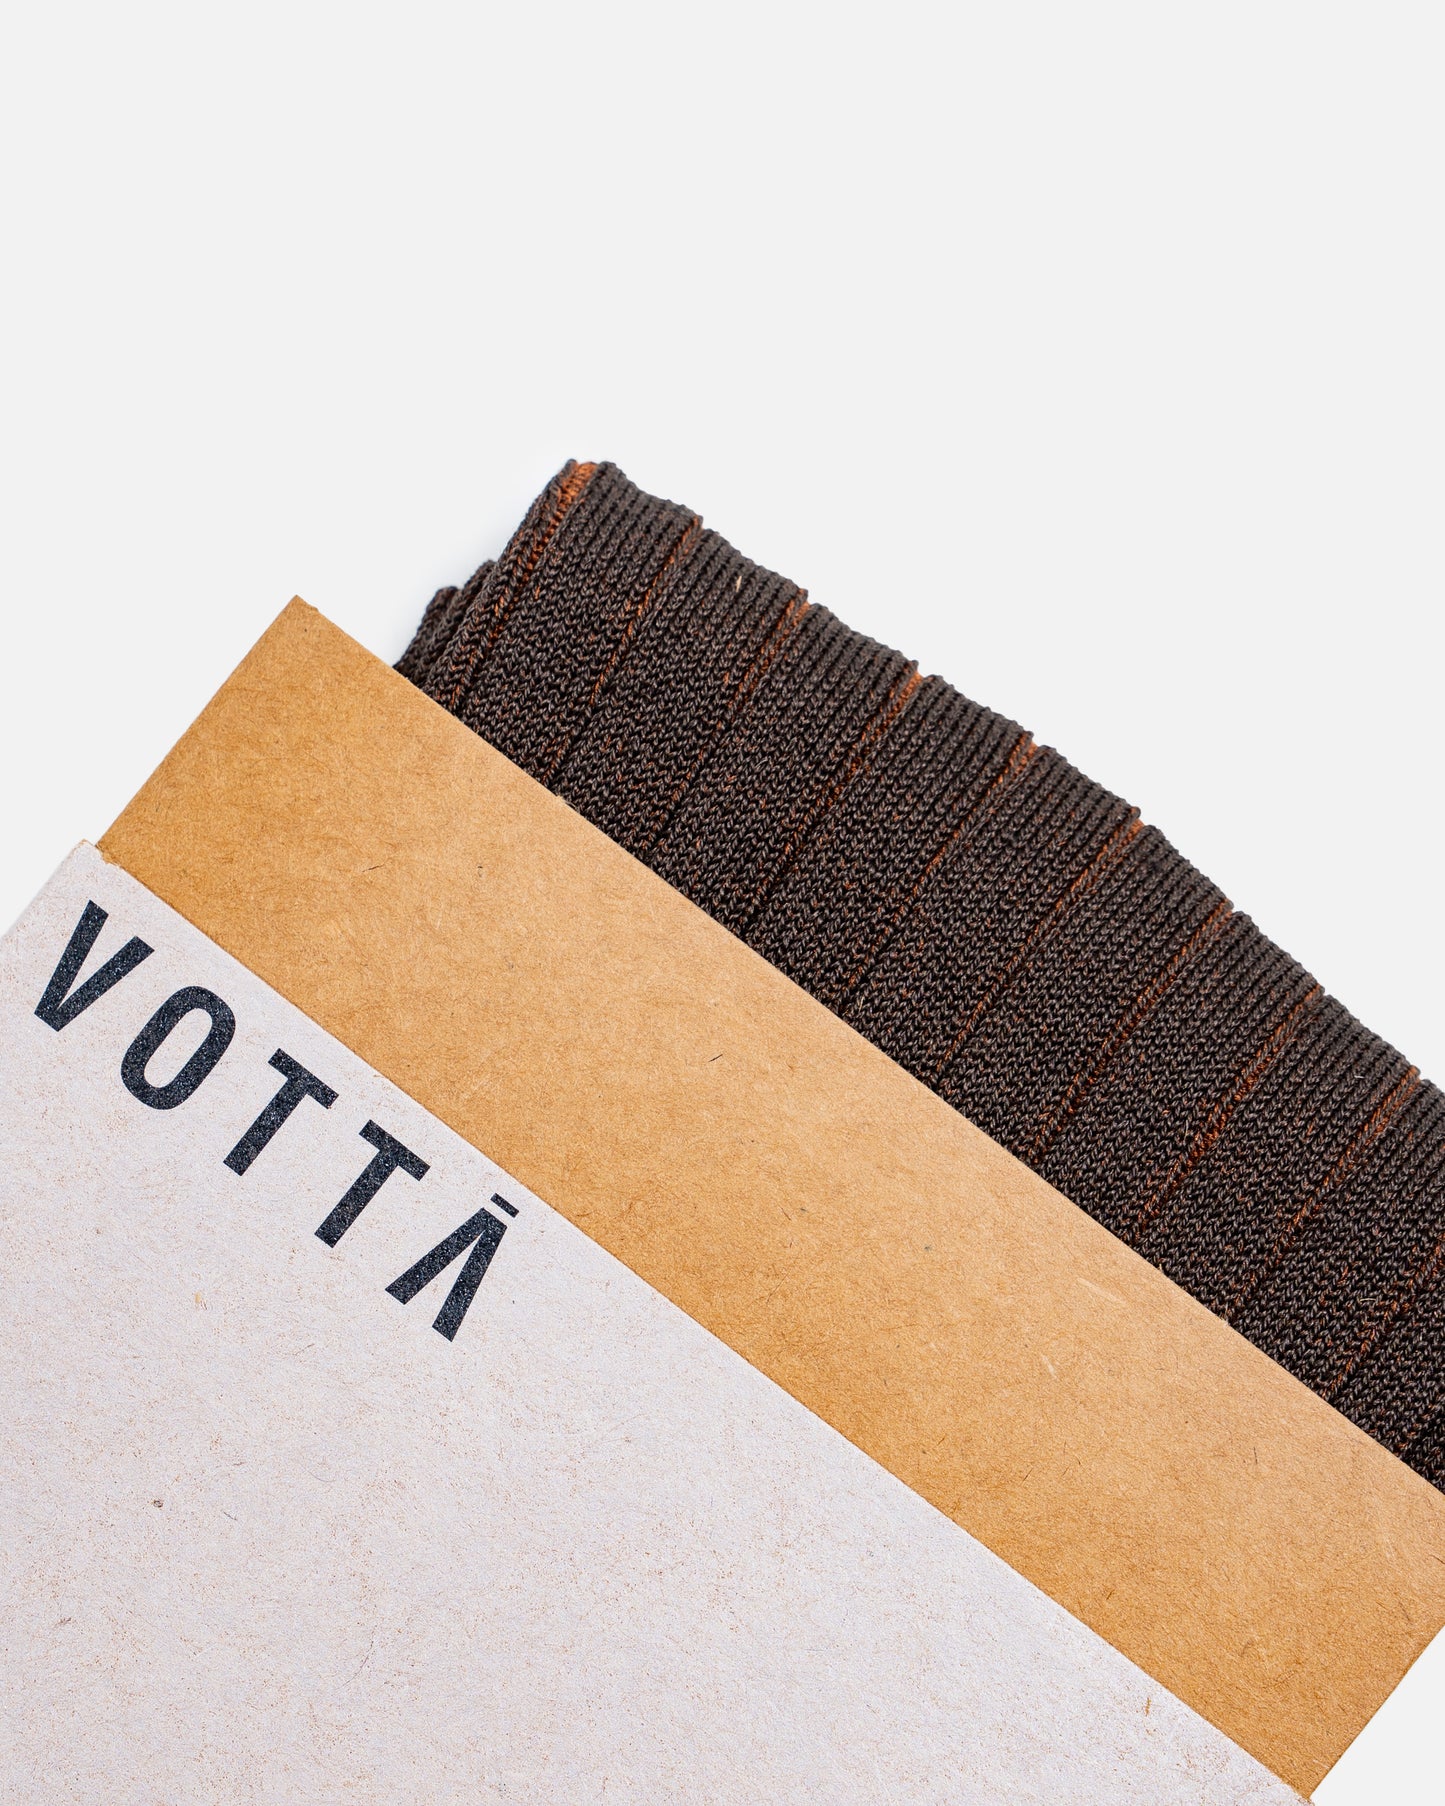 Votta Ribbed Twotone Brown/Orange TR5163